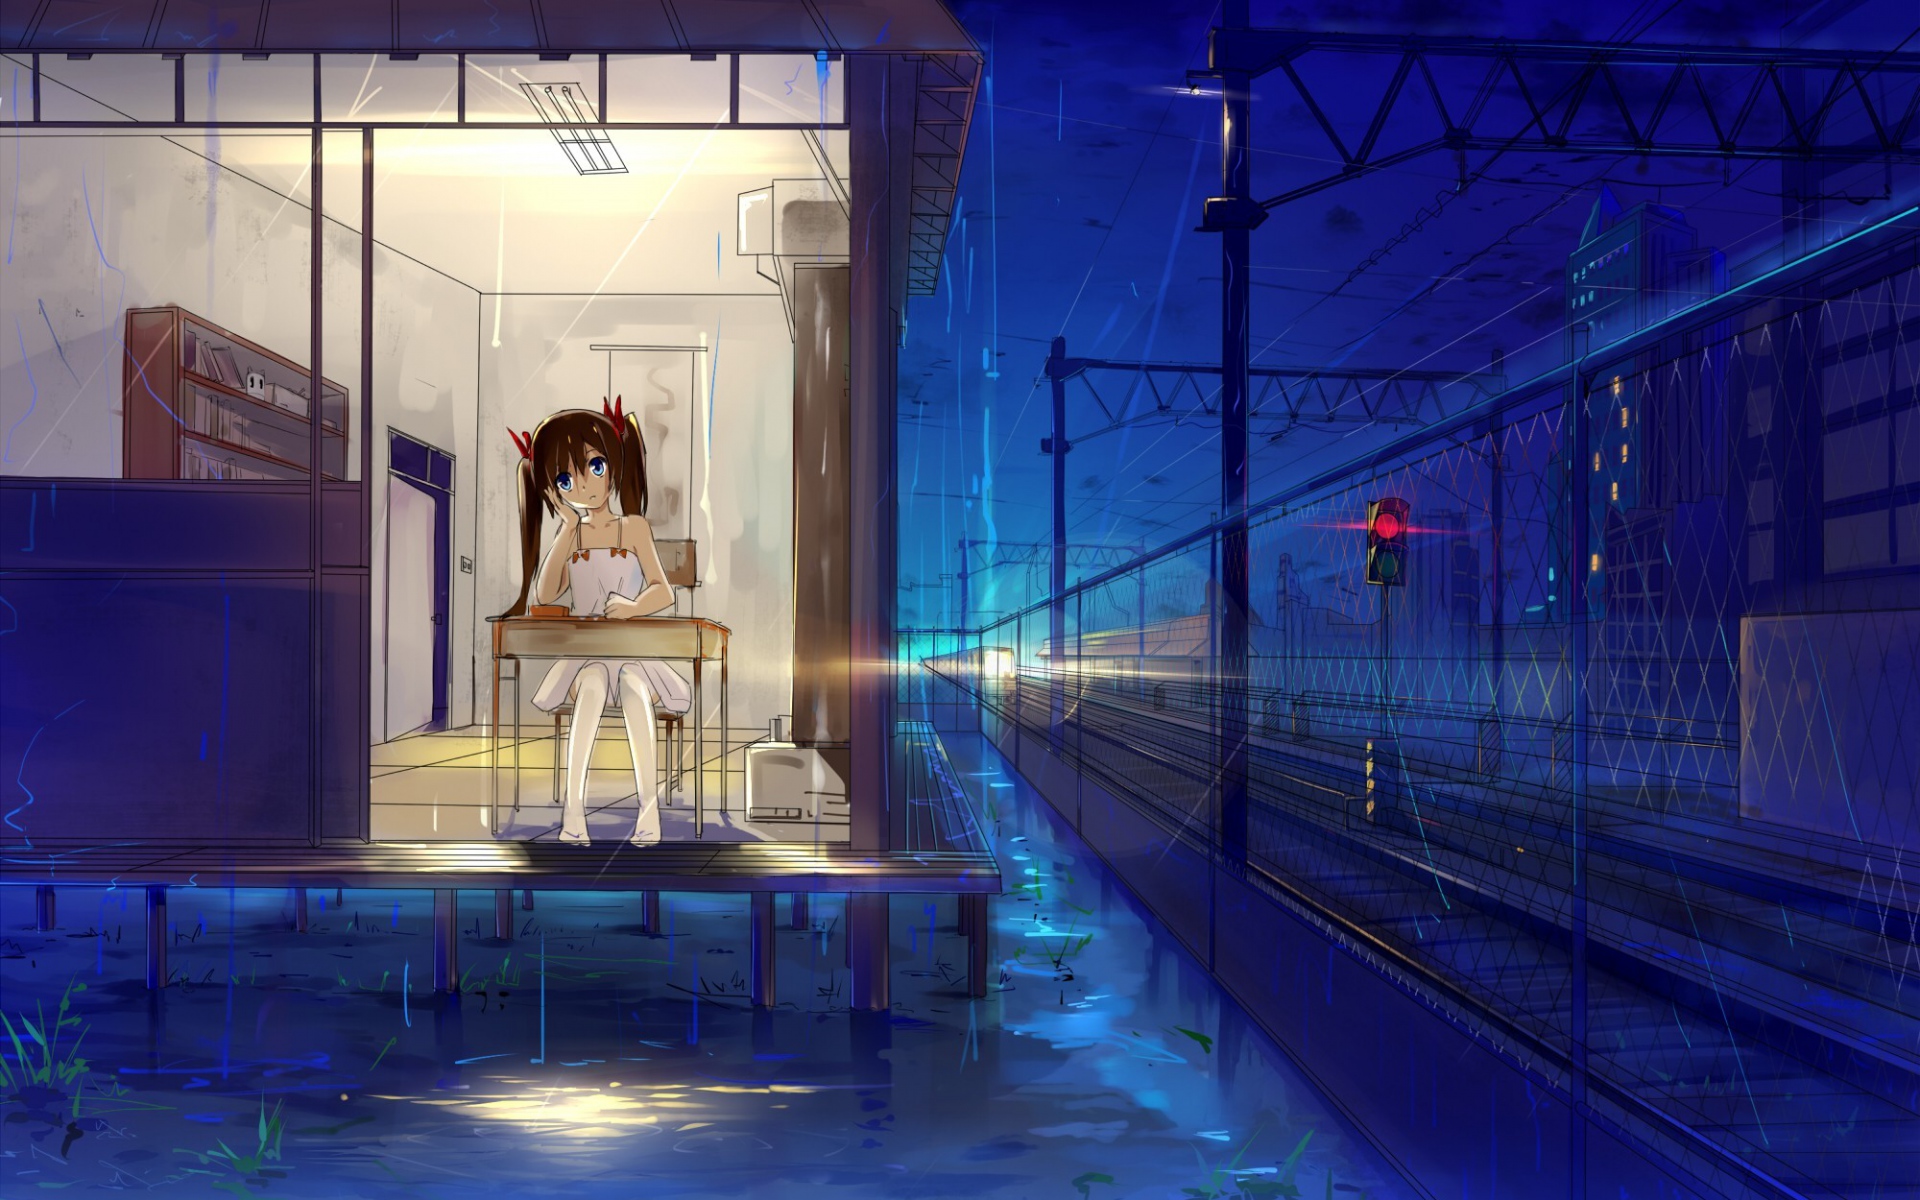 Картинки Haraguro вы, дом, девушка, дождь, железная дорога фото и обои на рабочий стол